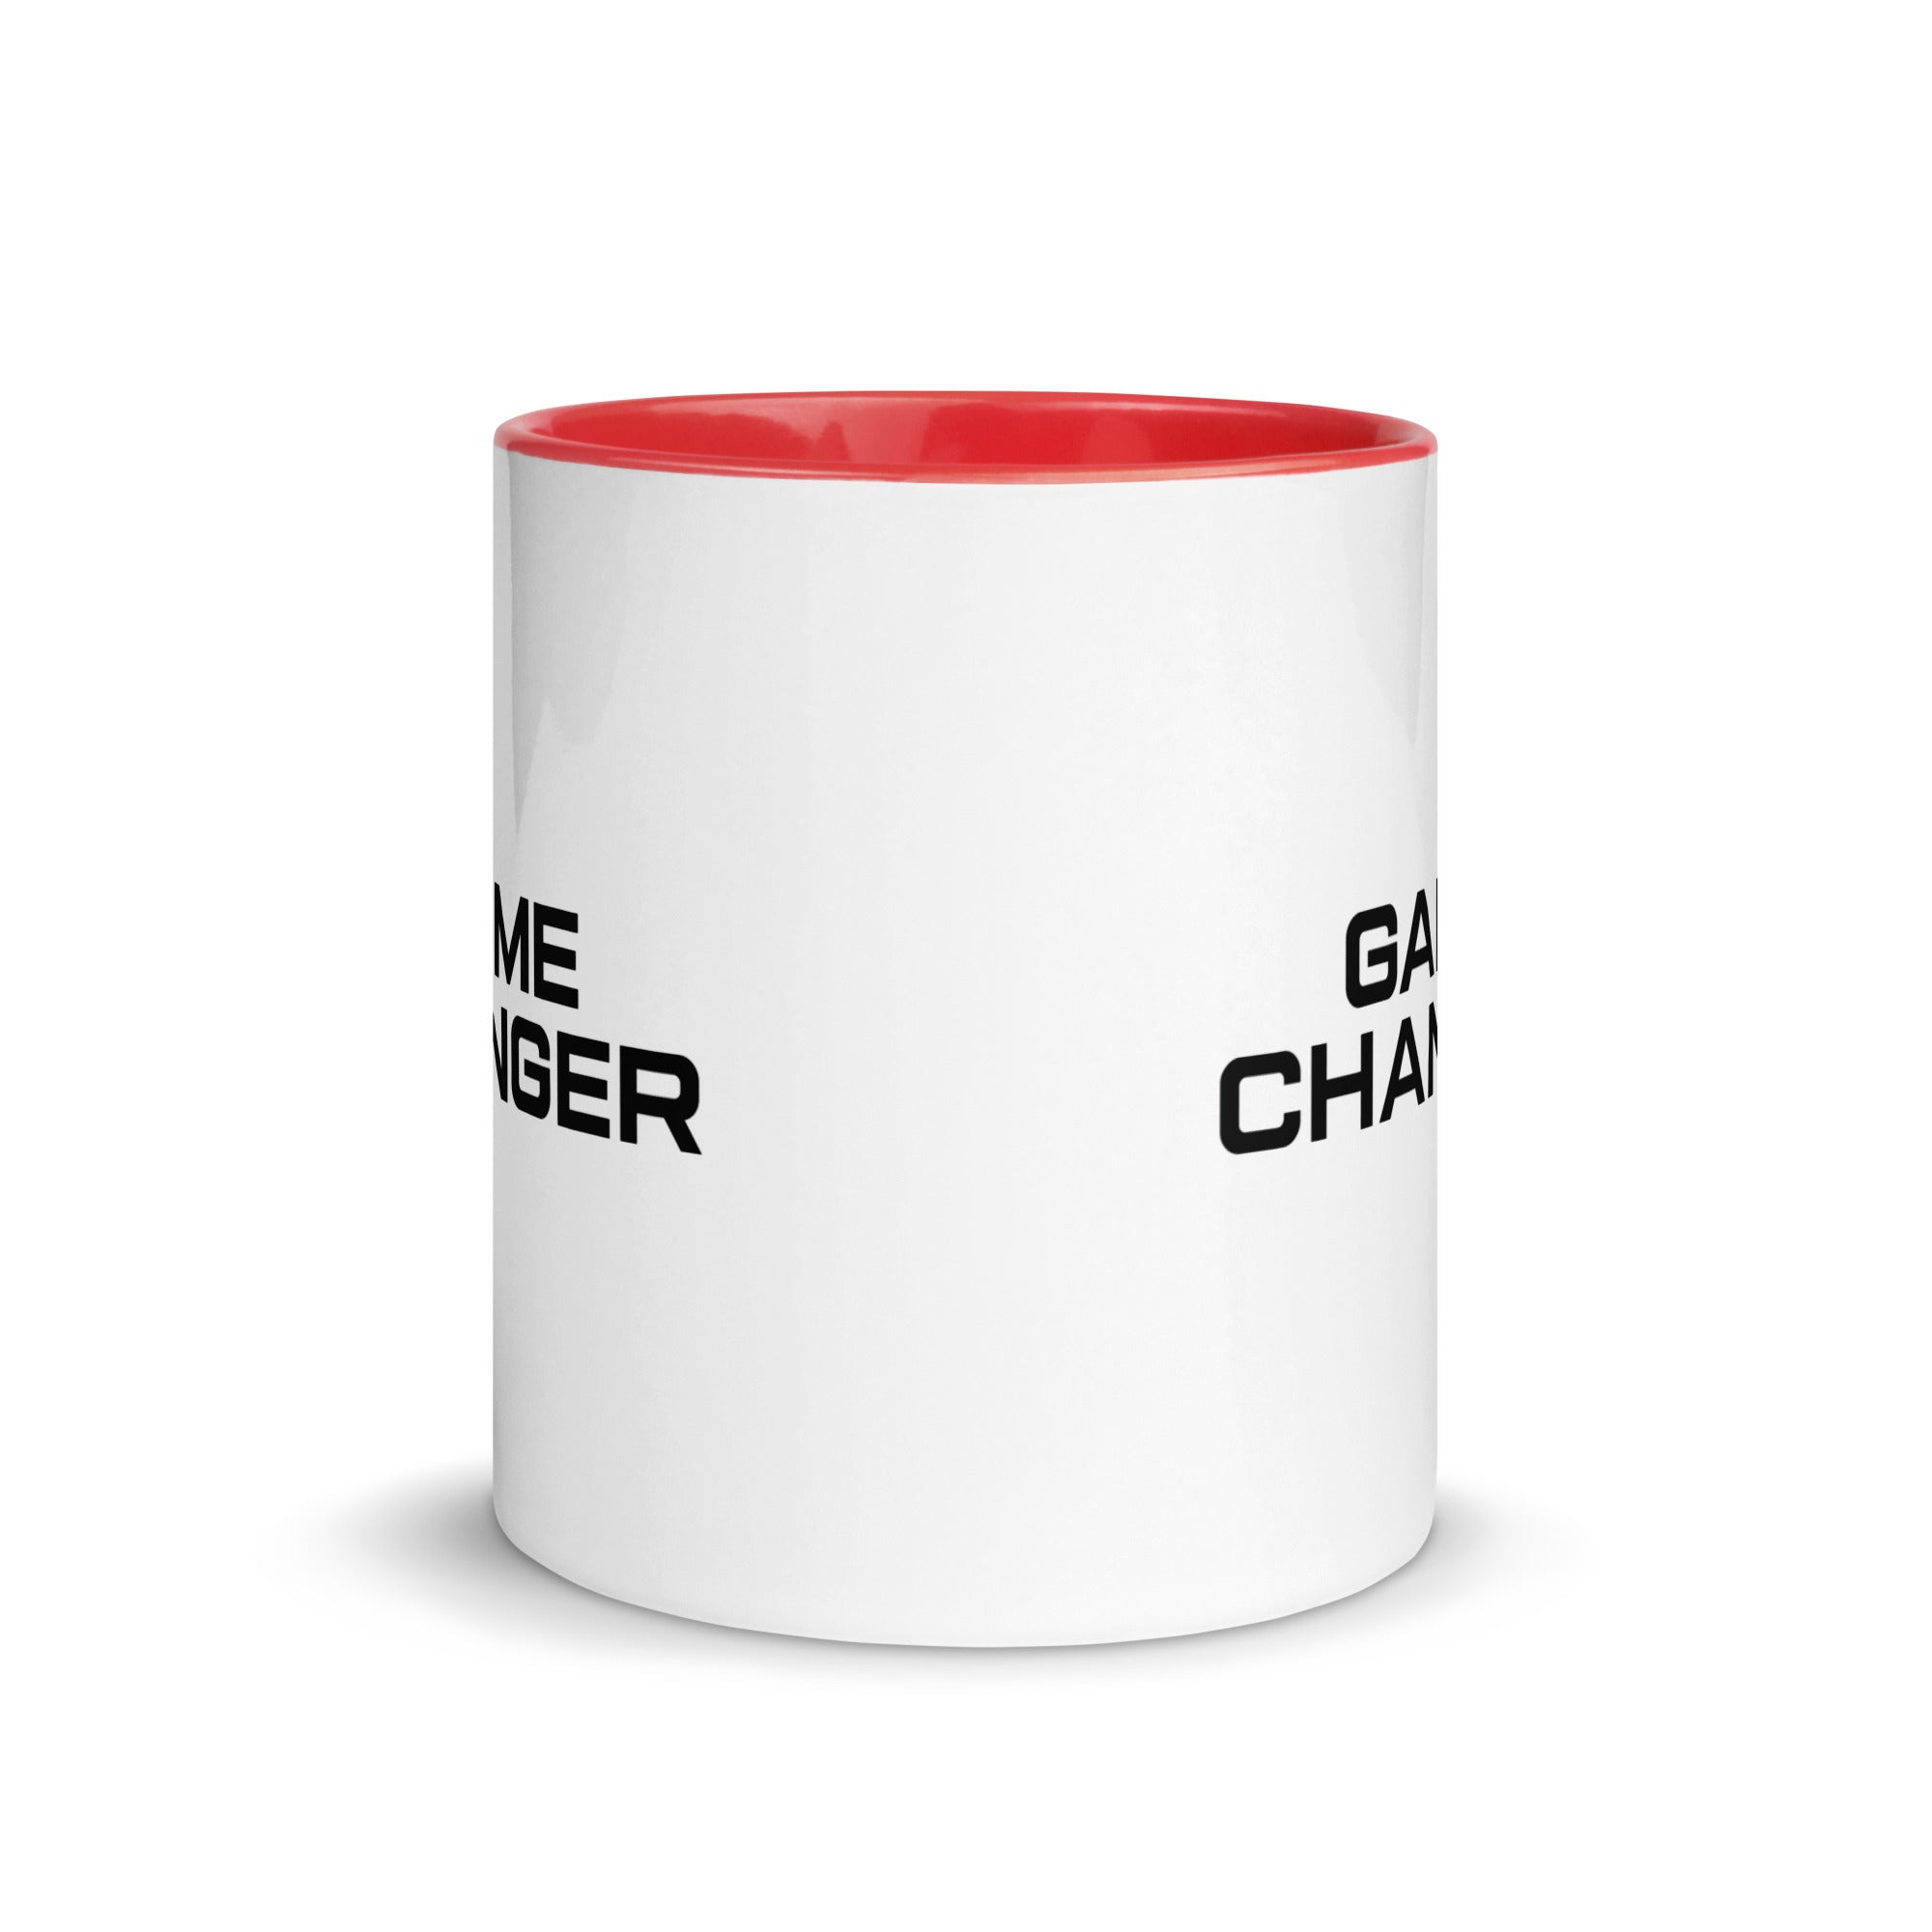 Mug with Color Inside | Gamechanger